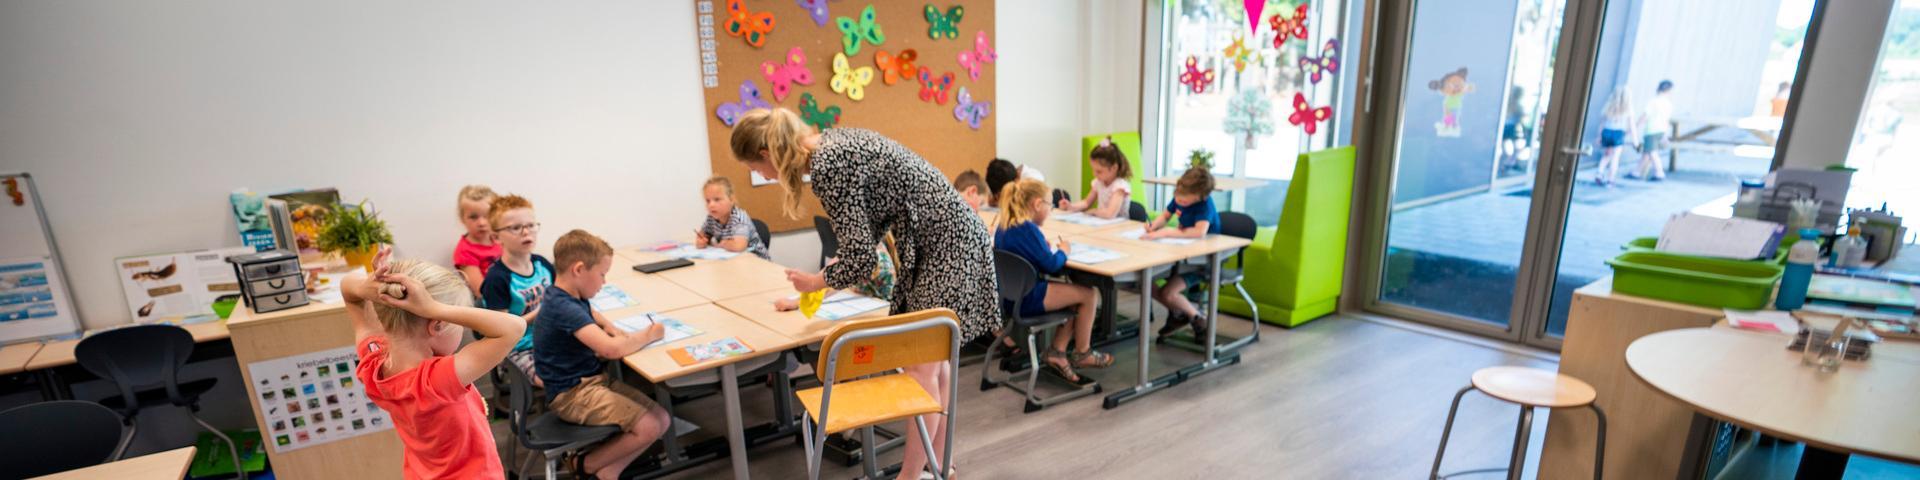 Magenta Delden meest duurzame school van Nederland, klaslokaal met kinderen en leerkracht